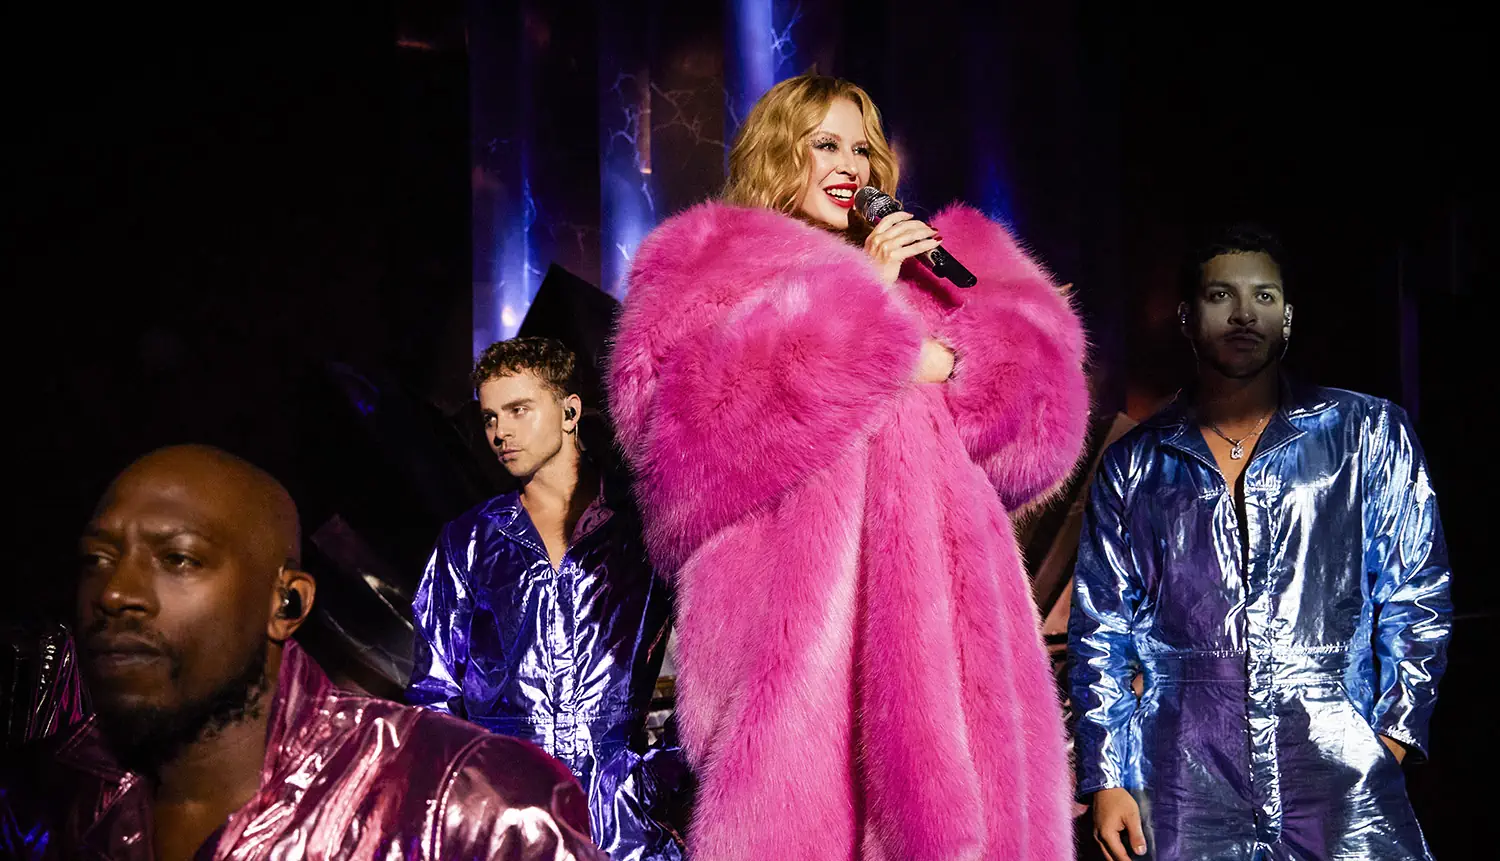 Alexandre Vauthier dresses Kylie Minogue for her Las Vegas show